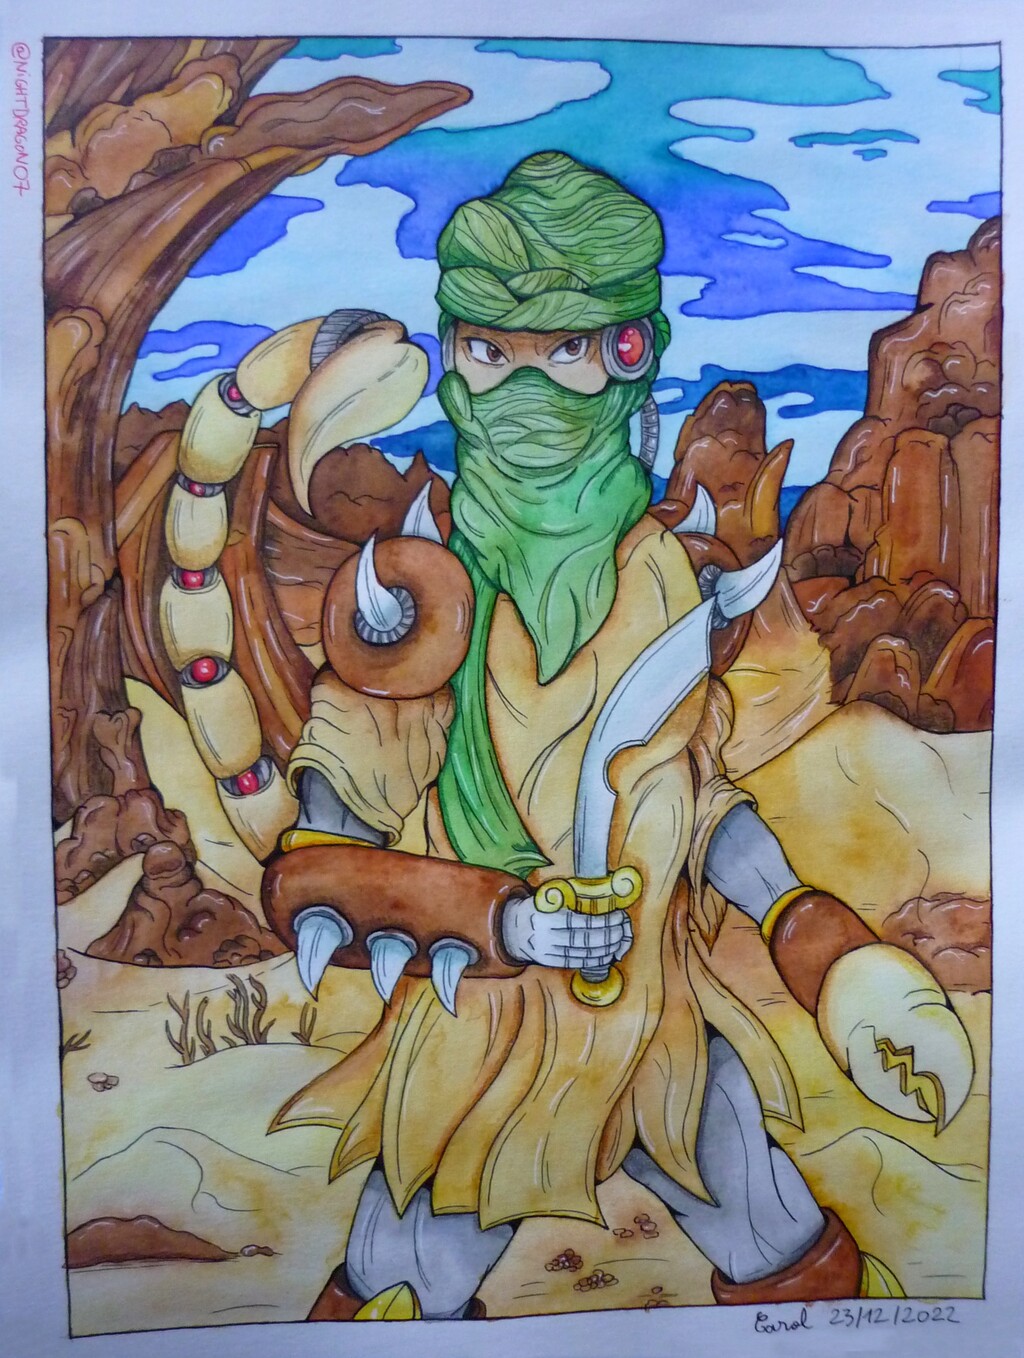 Desert Man